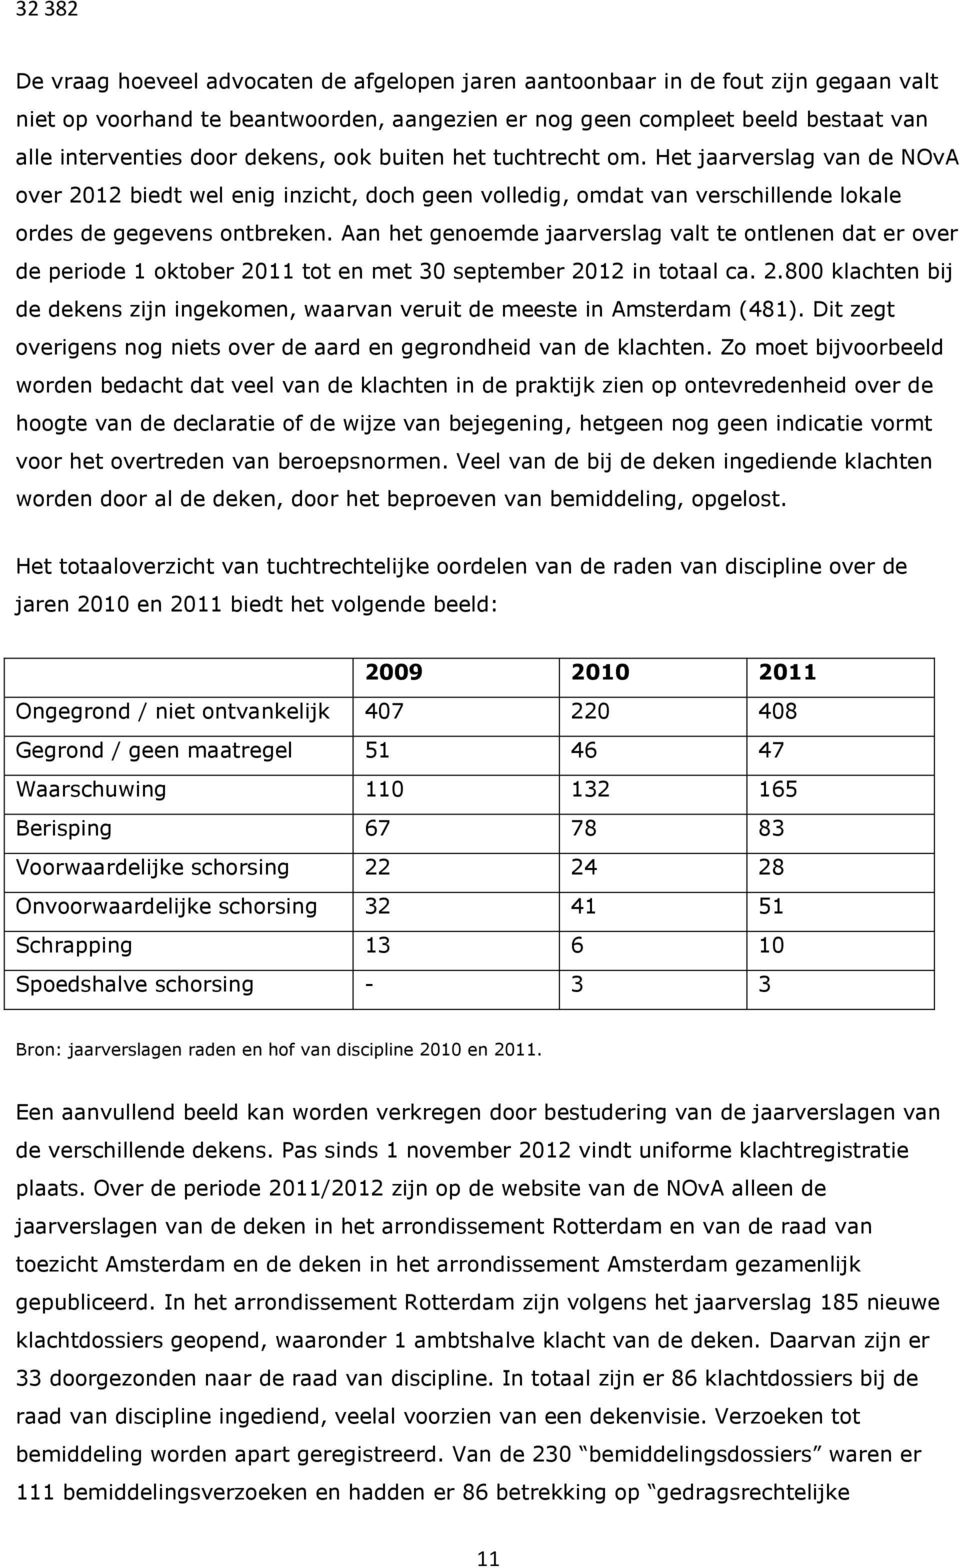 Aan het genoemde jaarverslag valt te ontlenen dat er over de periode 1 oktober 2011 tot en met 30 september 2012 in totaal ca. 2.800 klachten bij de dekens zijn ingekomen, waarvan veruit de meeste in Amsterdam (481).